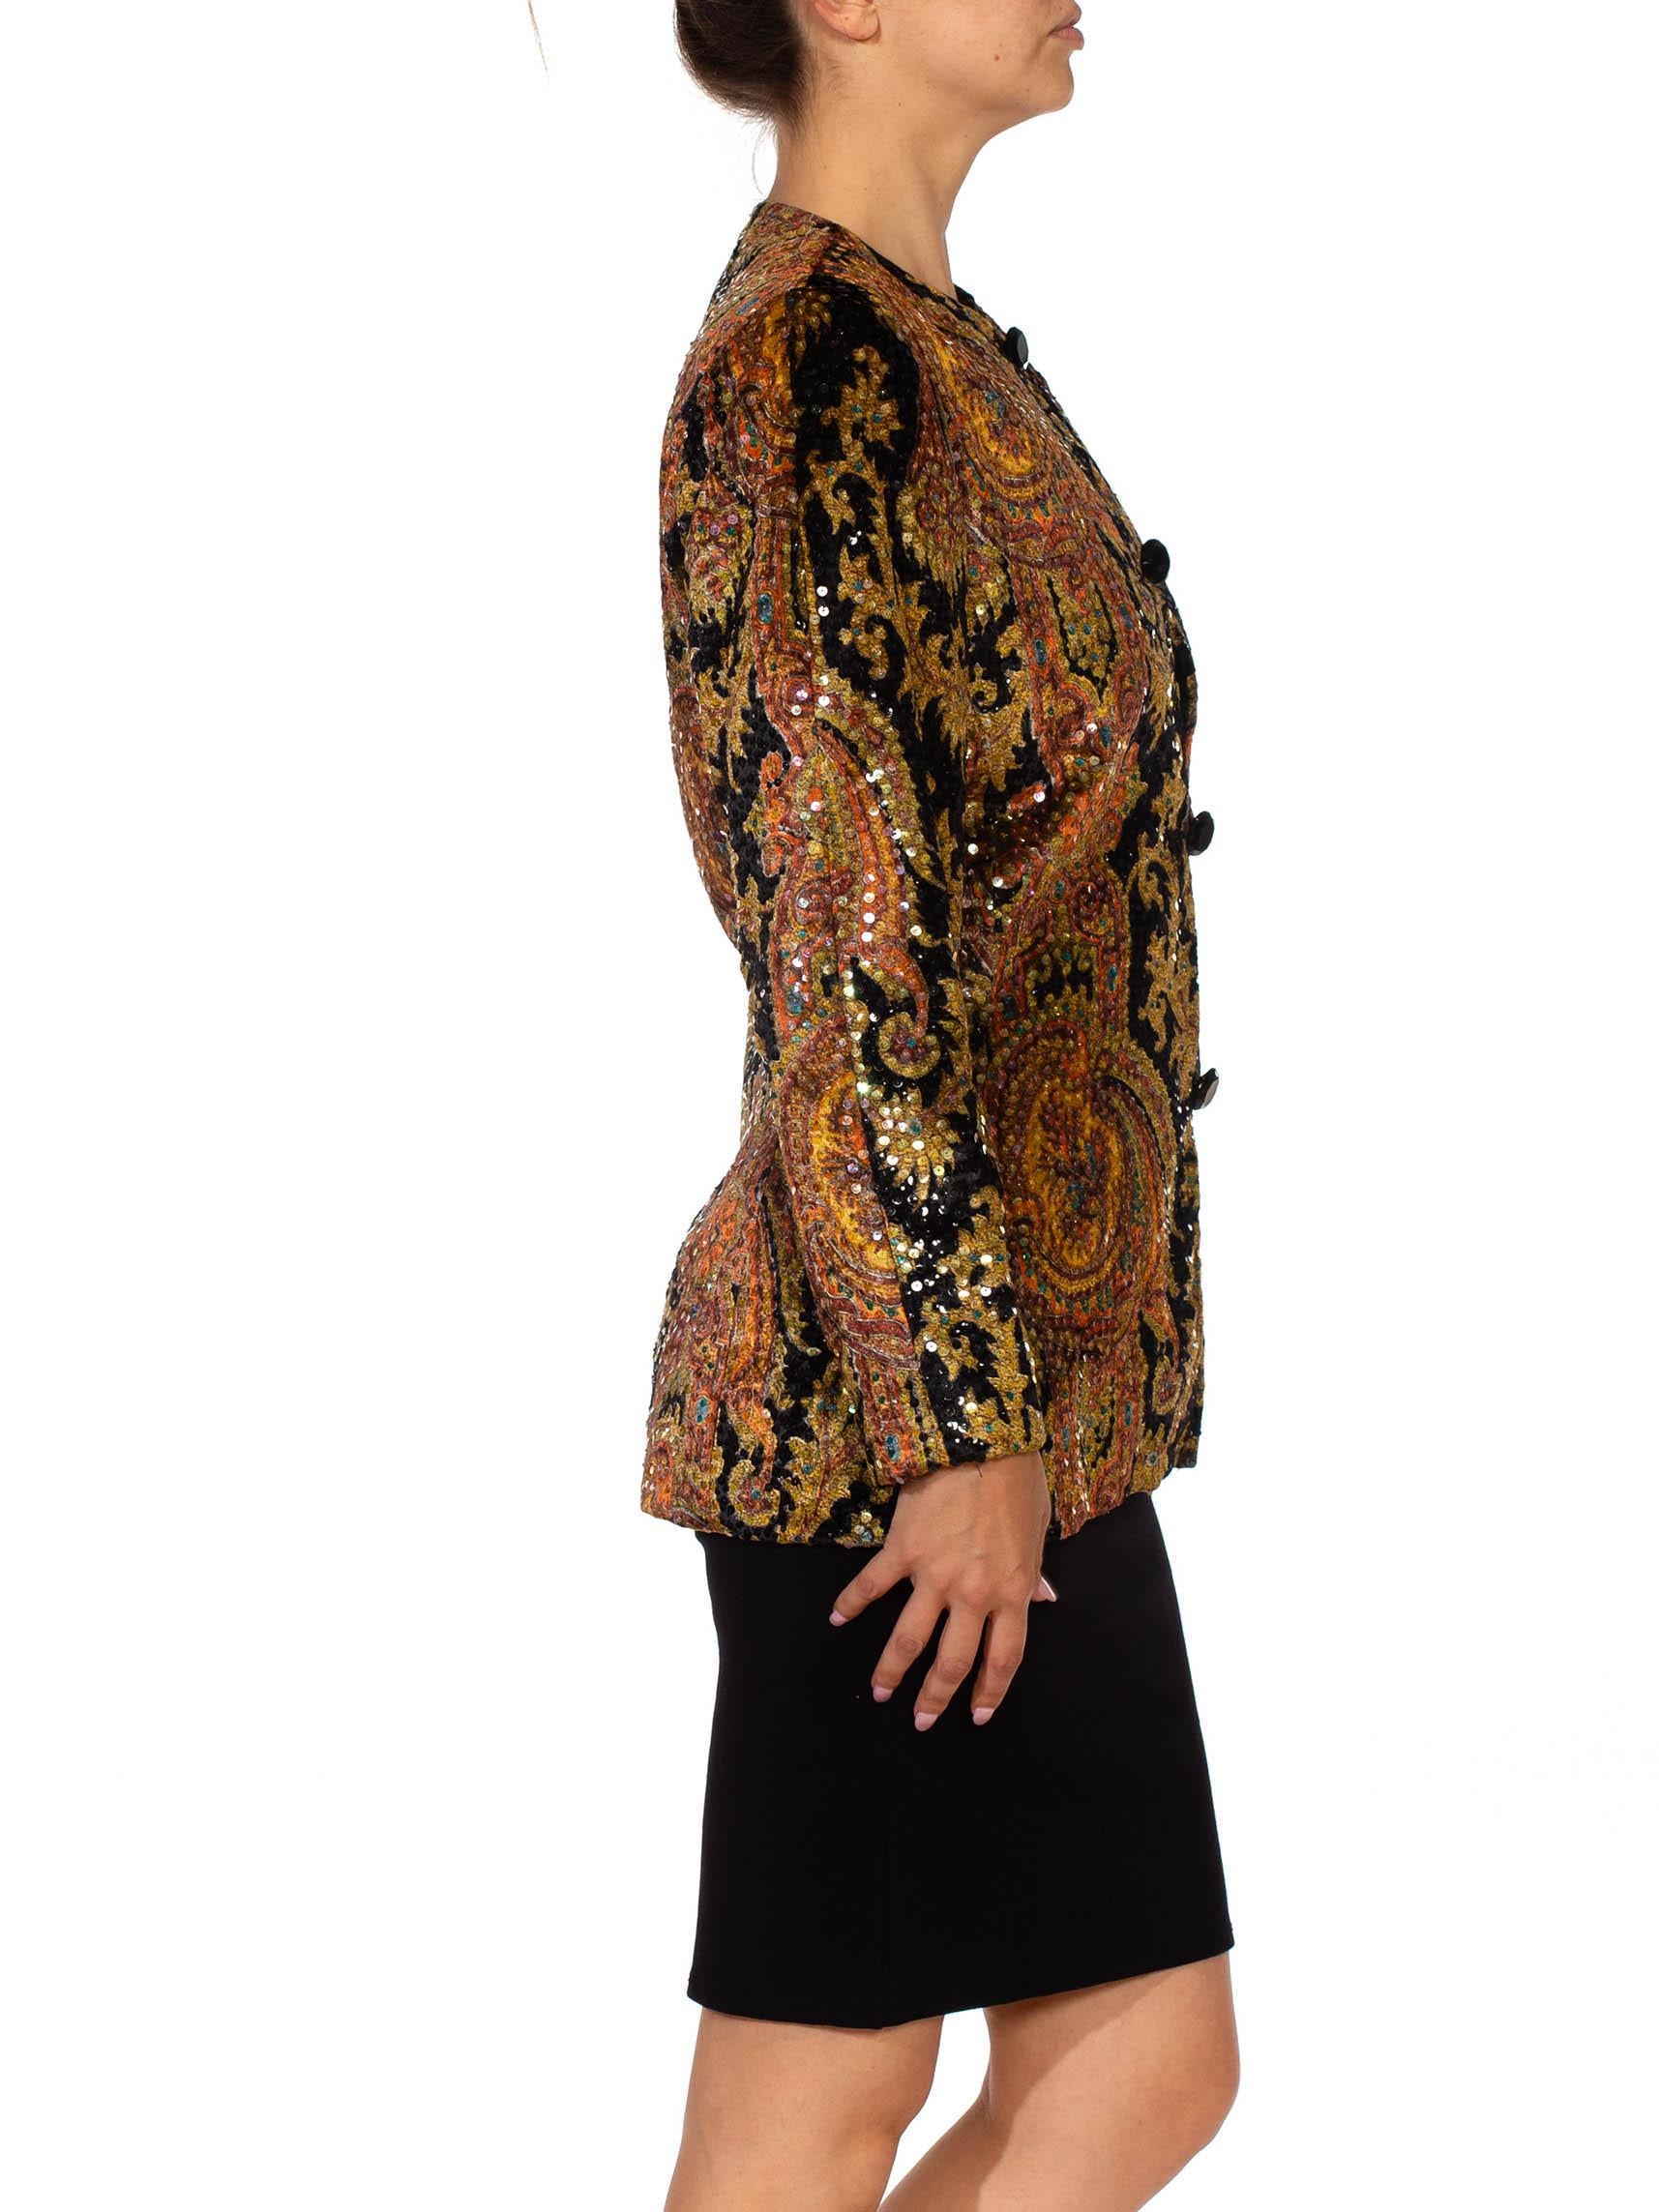 Vollständig gefüttert in sinnlicher Seiden-Charmeuse mit großen, facettierten schwarzen Glasknöpfen 1980S BILL BLASS Black Paisley Silk Velvet Couture Hand Beaded Sequin Jacket 